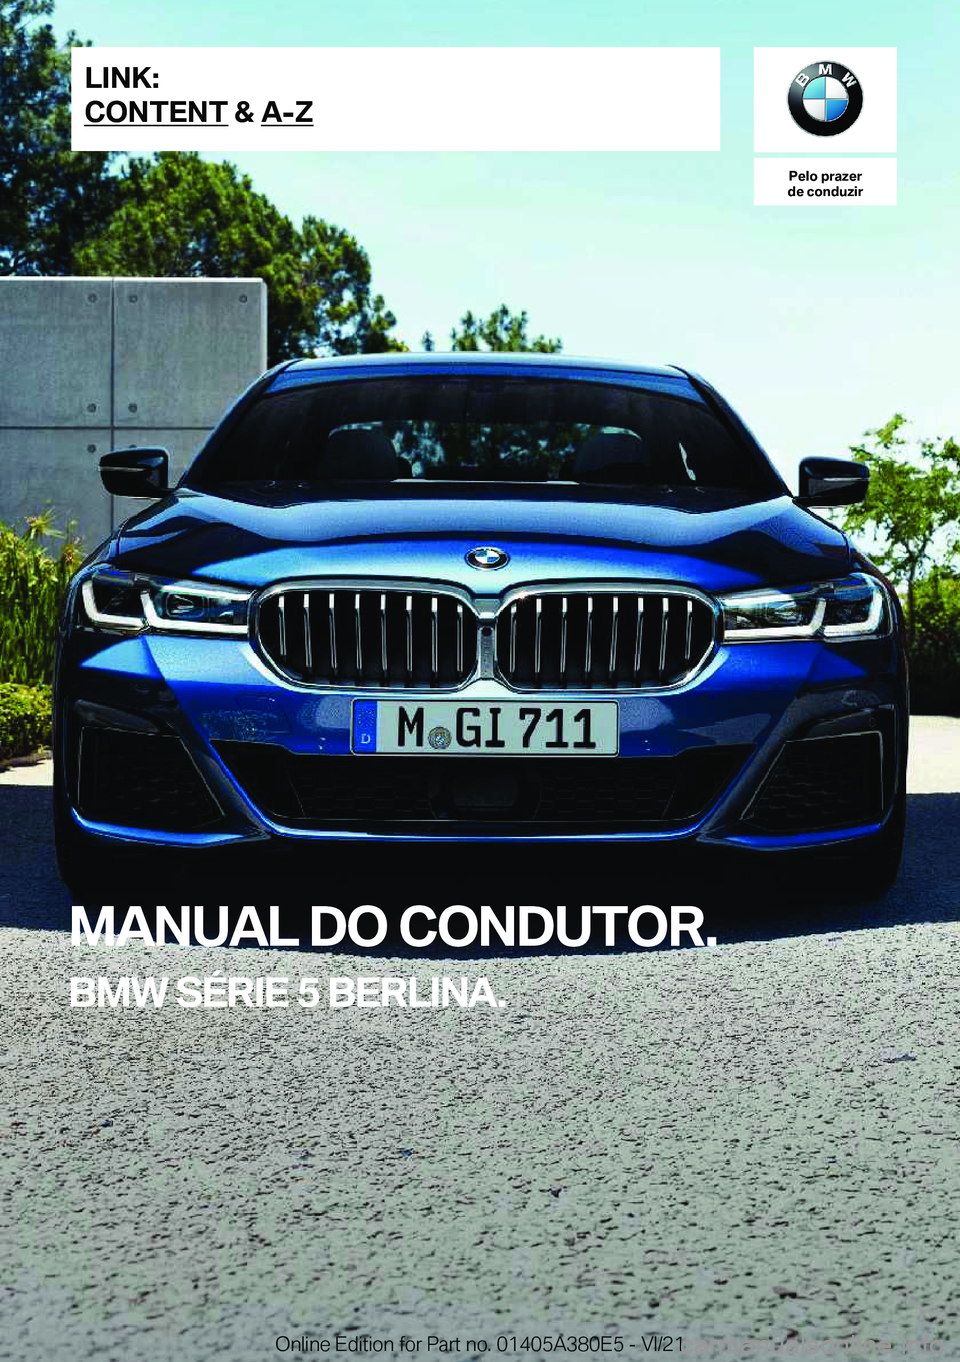 BMW 5 SERIES 2022  Manual do condutor (in Portuguese) �P�e�l�o��p�r�a�z�e�r
�d�e��c�o�n�d�u�z�i�r
�M�A�N�U�A�L��D�O��C�O�N�D�U�T�O�R�.
�B�M�W��S�É�R�I�E��5��B�E�R�L�I�N�A�.�L�I�N�K�:
�C�O�N�T�E�N�T��&��A�-�Z�O�n�l�i�n�e��E�d�i�t�i�o�n��f�o�r�